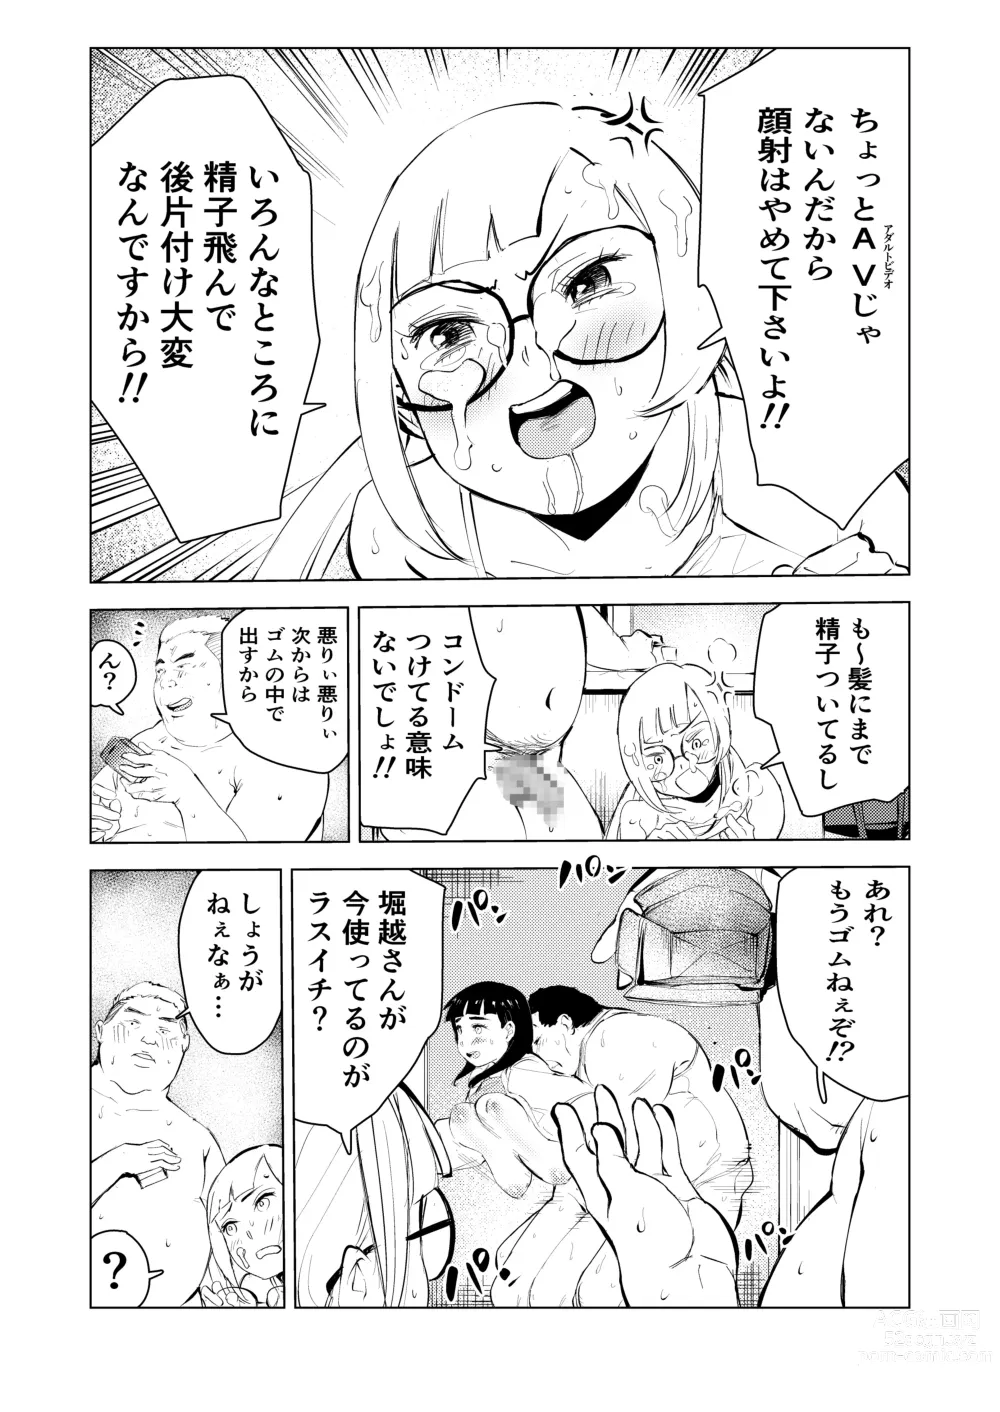 Page 16 of doujinshi Ashisutanto no oshigoto